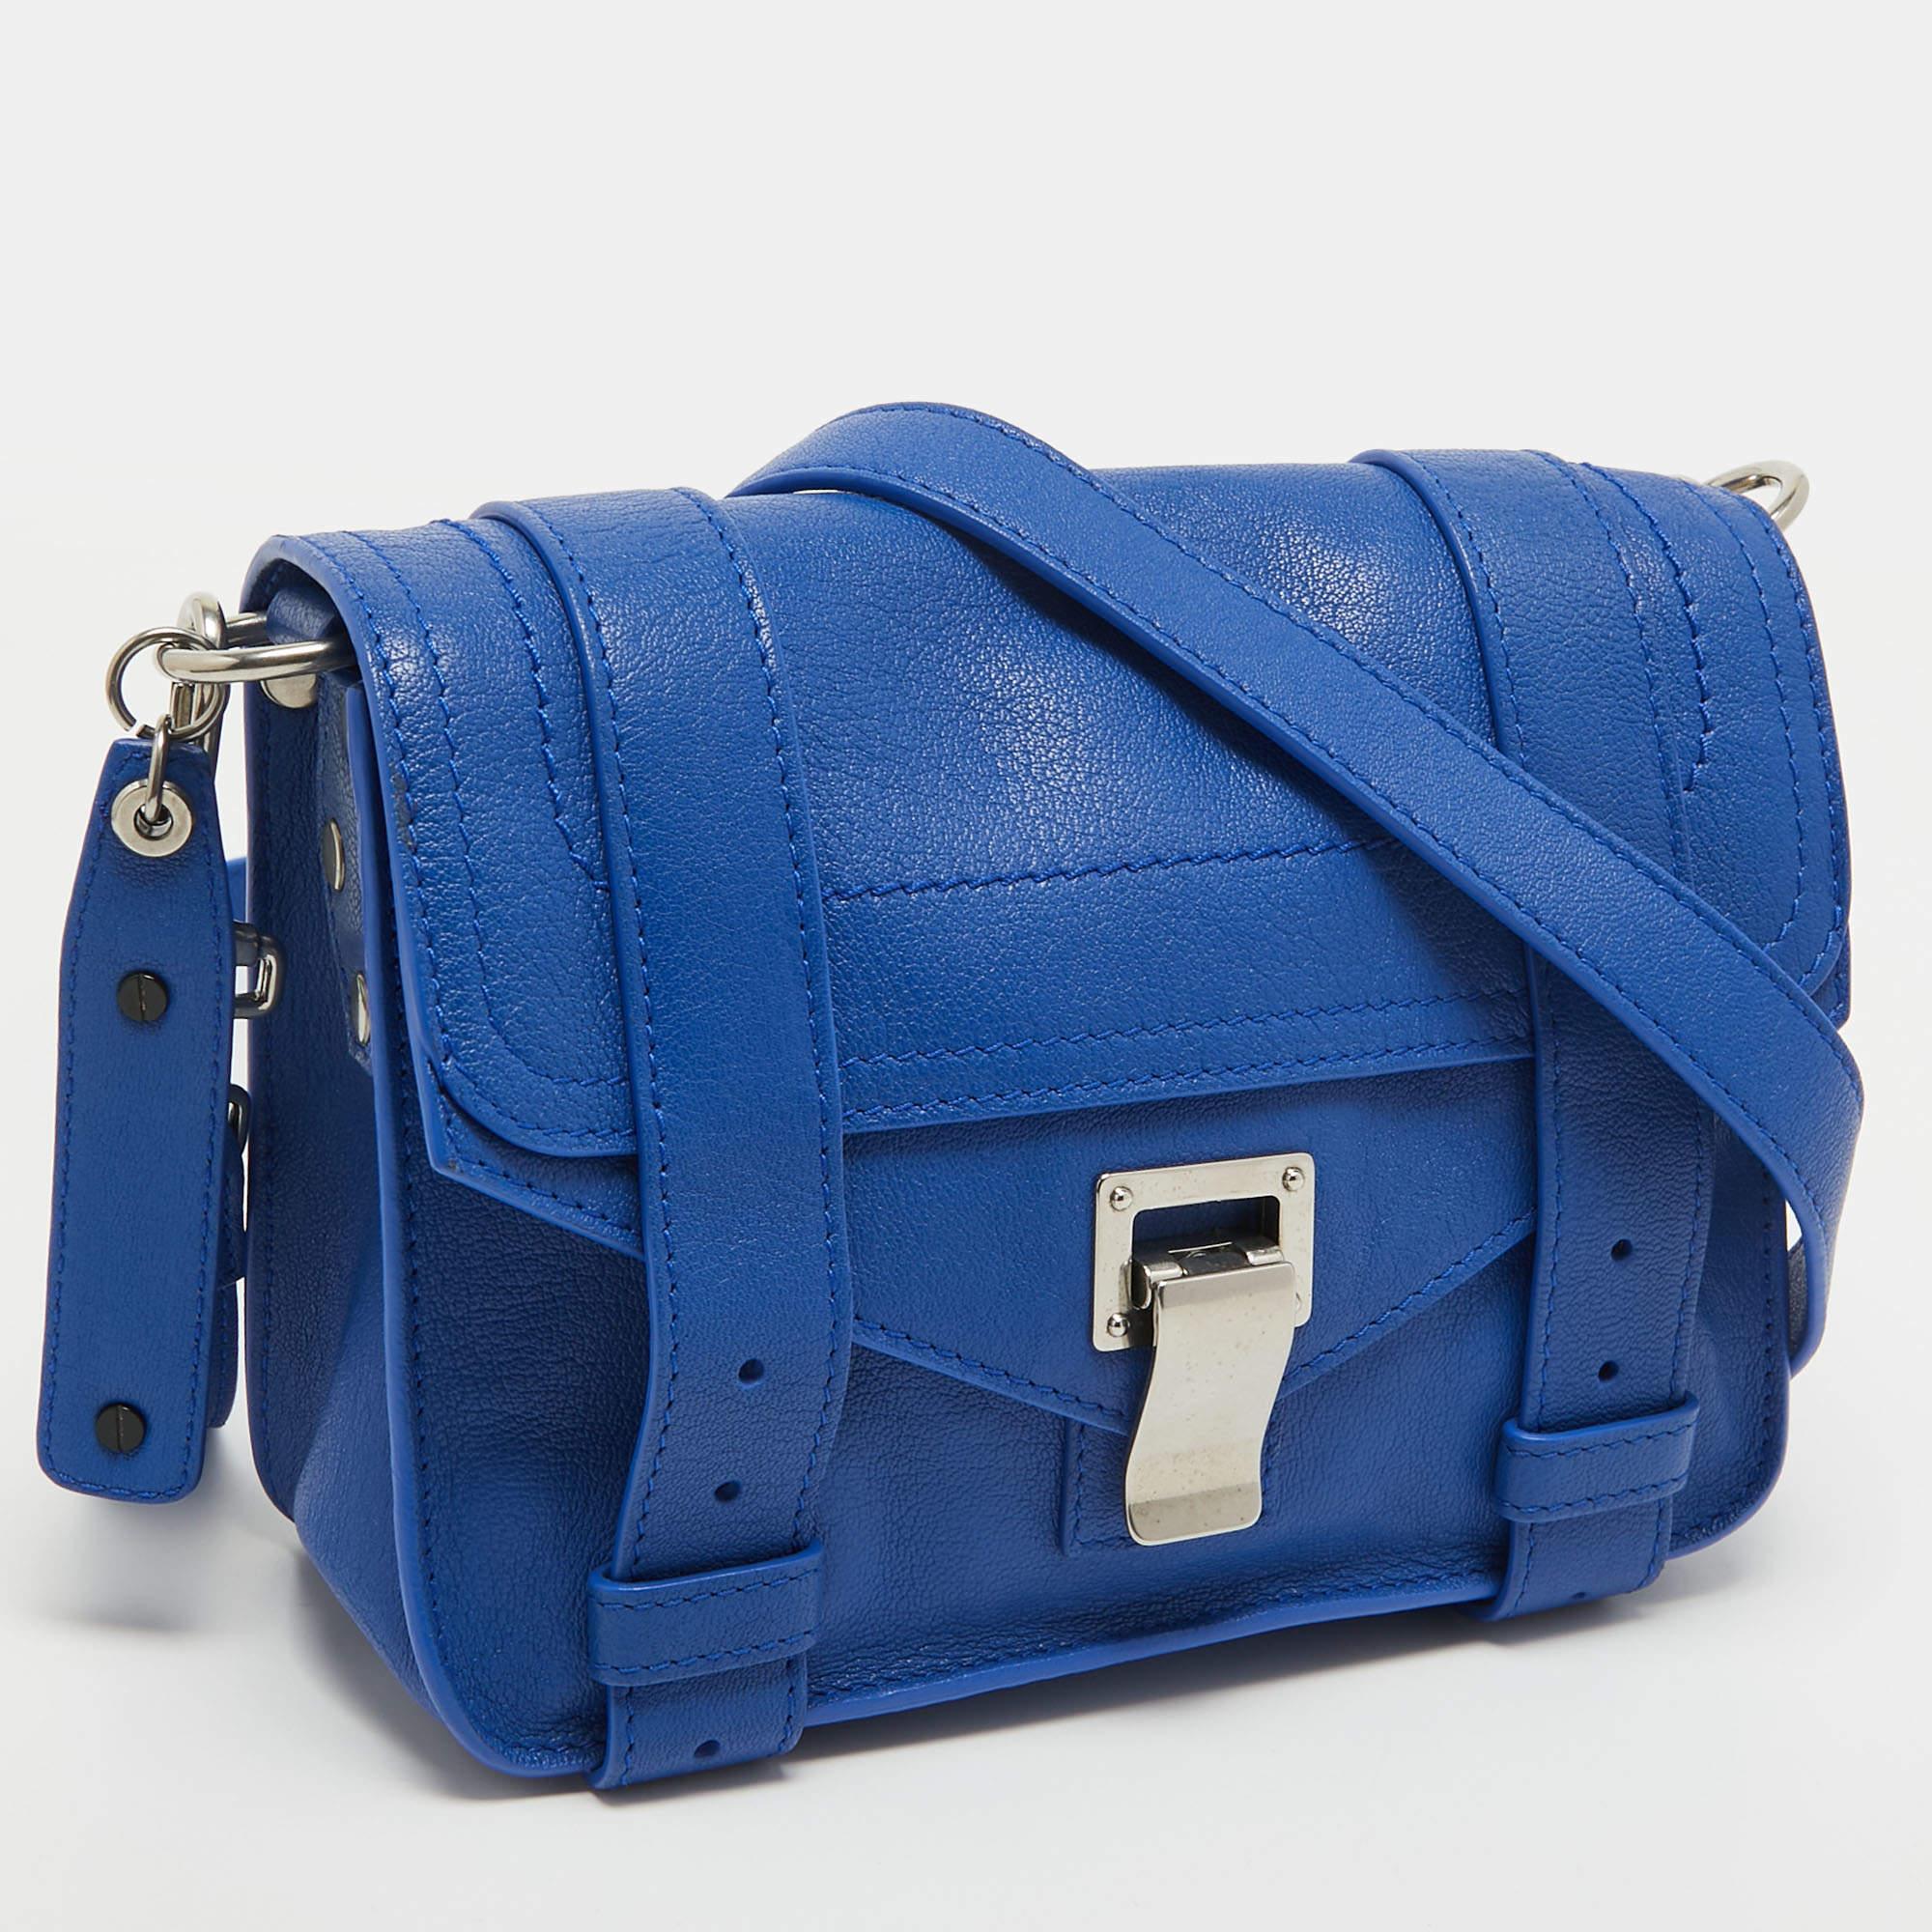 Die PS1 Crossbody Bag von Proenza Schouler ist ein schickes und kompaktes Accessoire aus hochwertigem Leder in einem leuchtenden Blauton. Das kultige PS1-Design umfasst eine Frontklappe mit dem charakteristischen Flip-Lock-Verschluss, einen